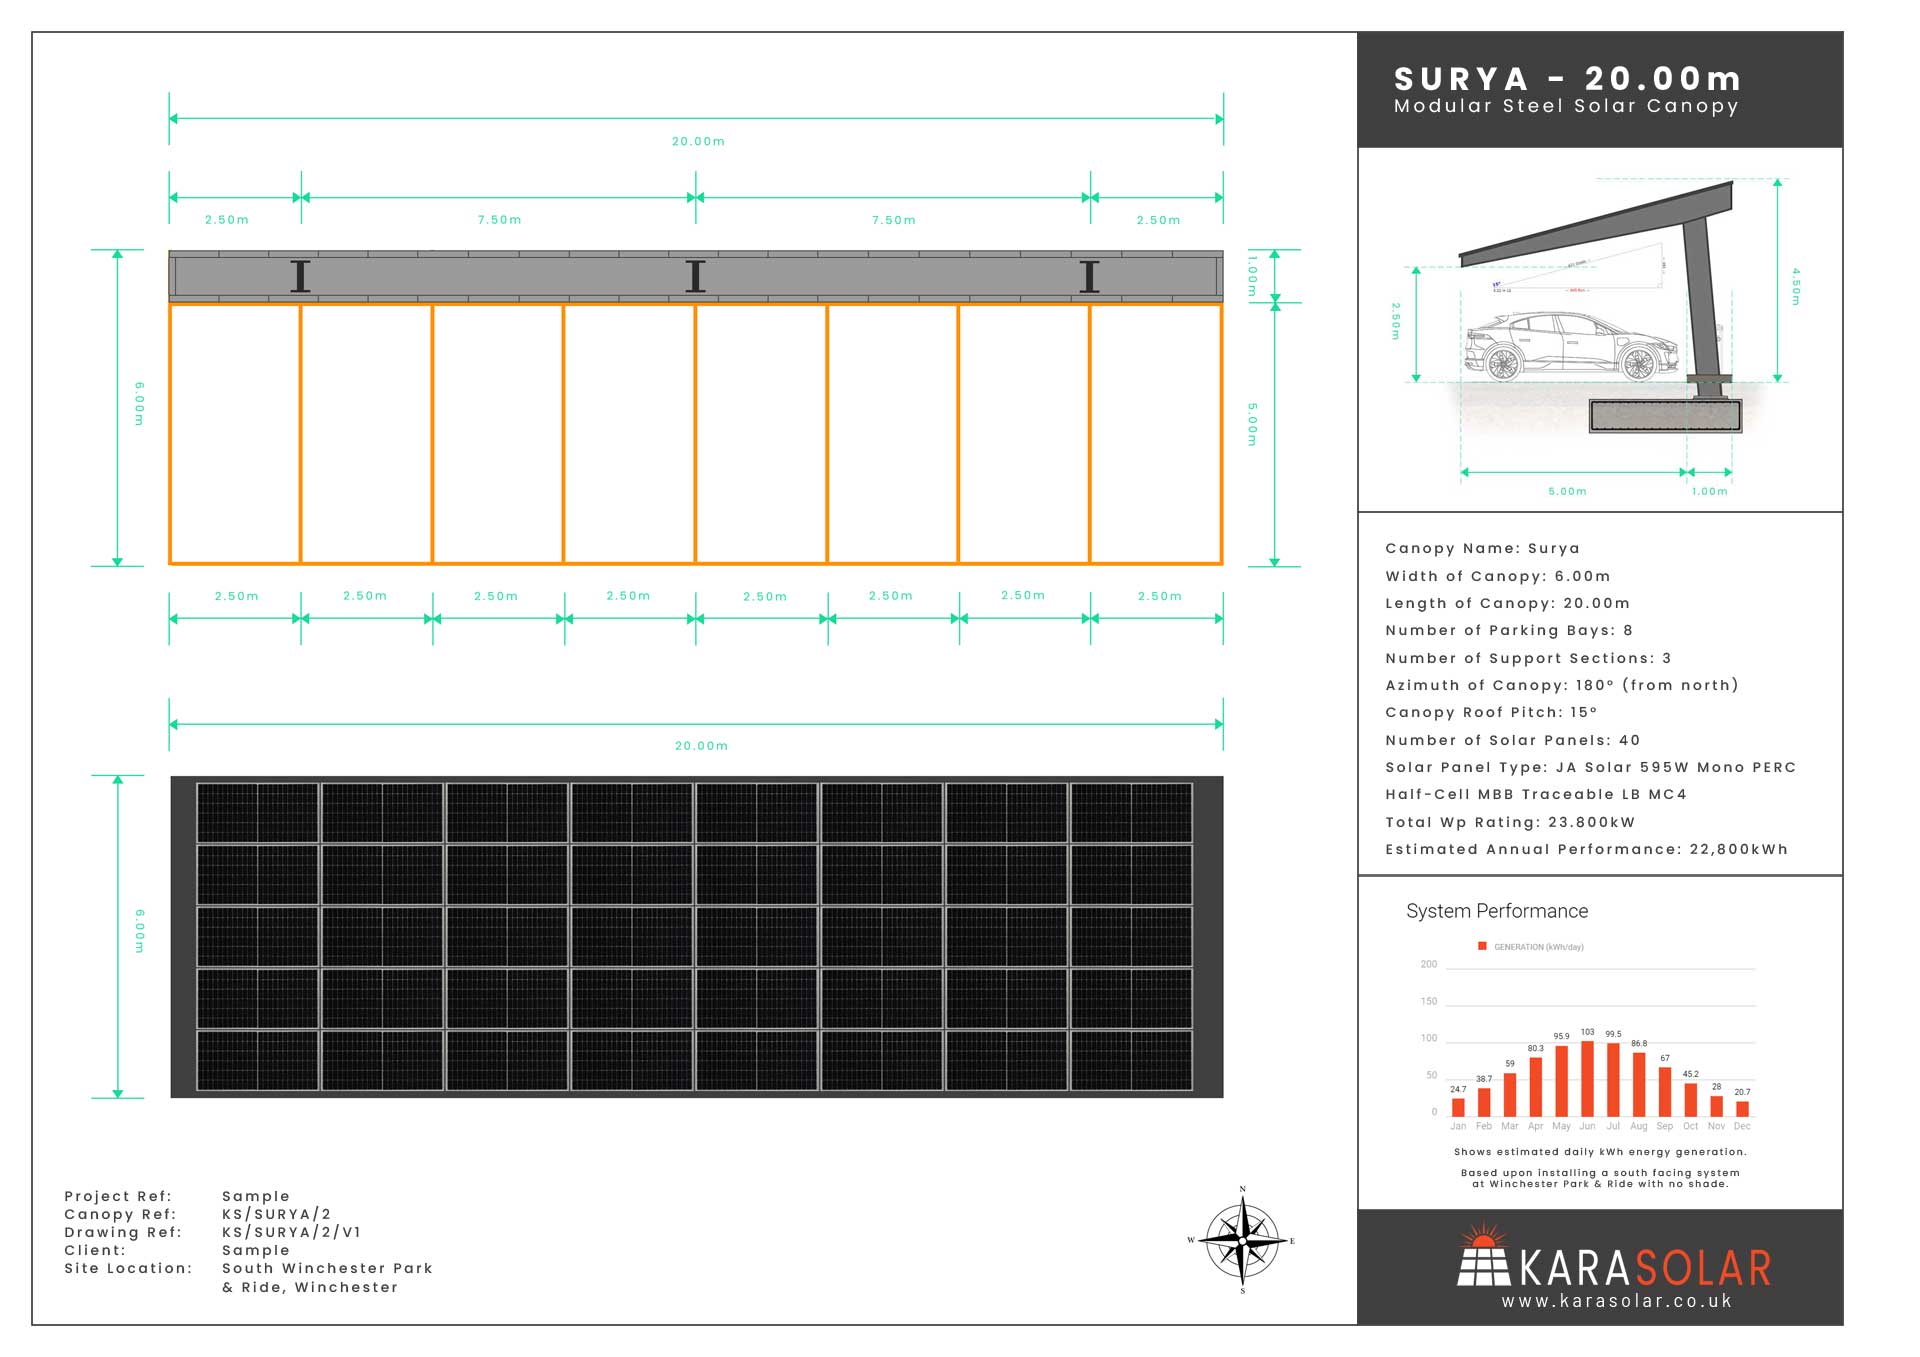 Surya-Solar-Canopy-Datasheet-Sample-20.00m